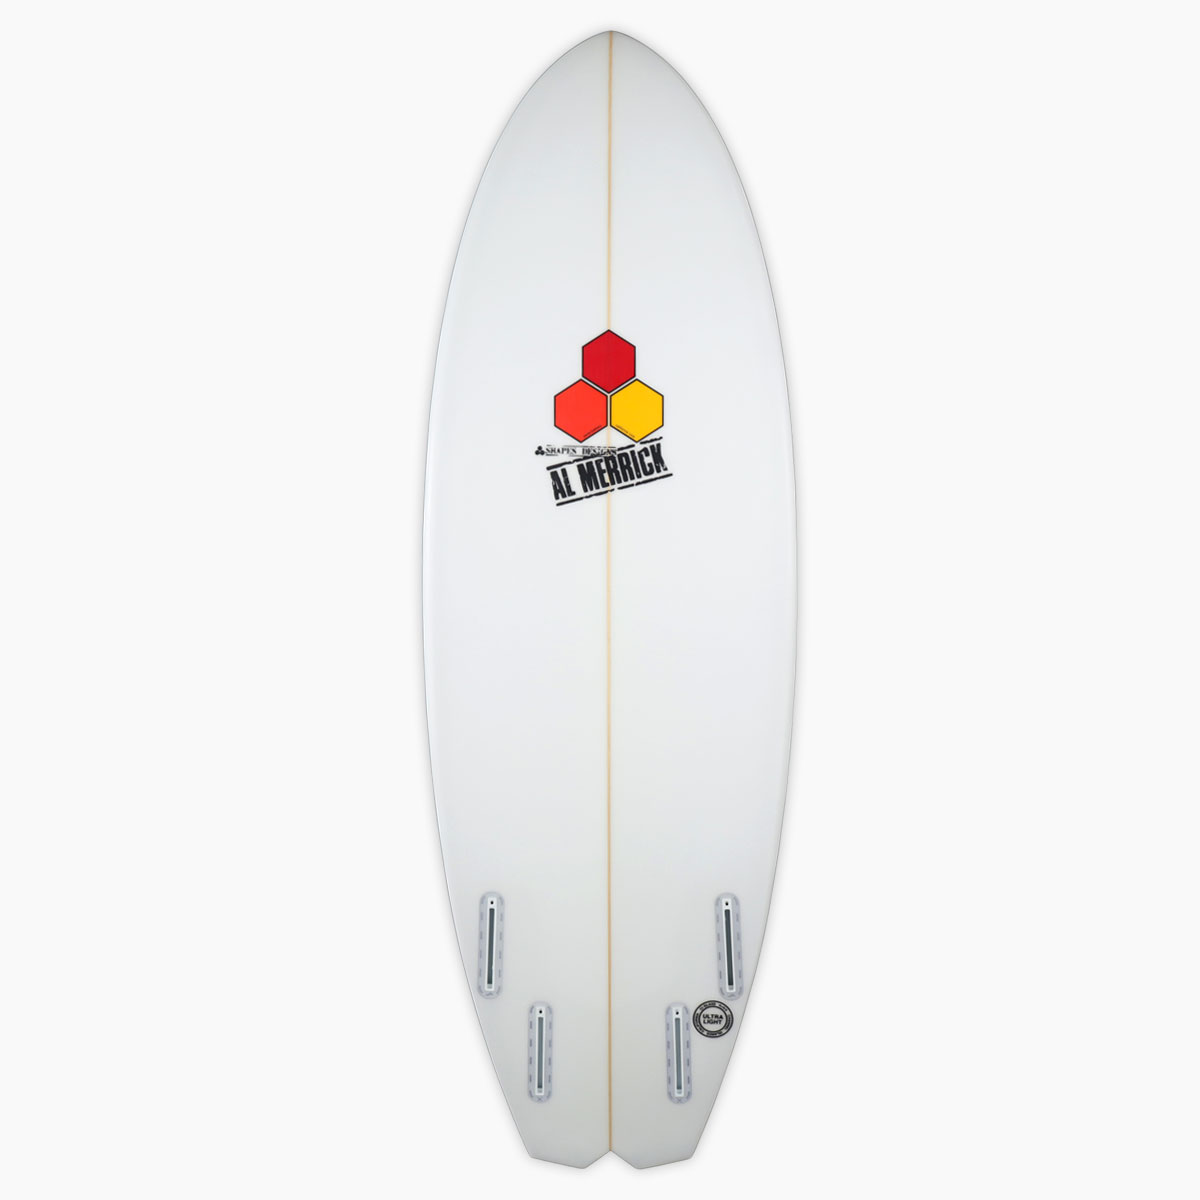 SurfBoardNet / ブランド:CHANNEL ISLANDS モデル:Bobby Quad futures type